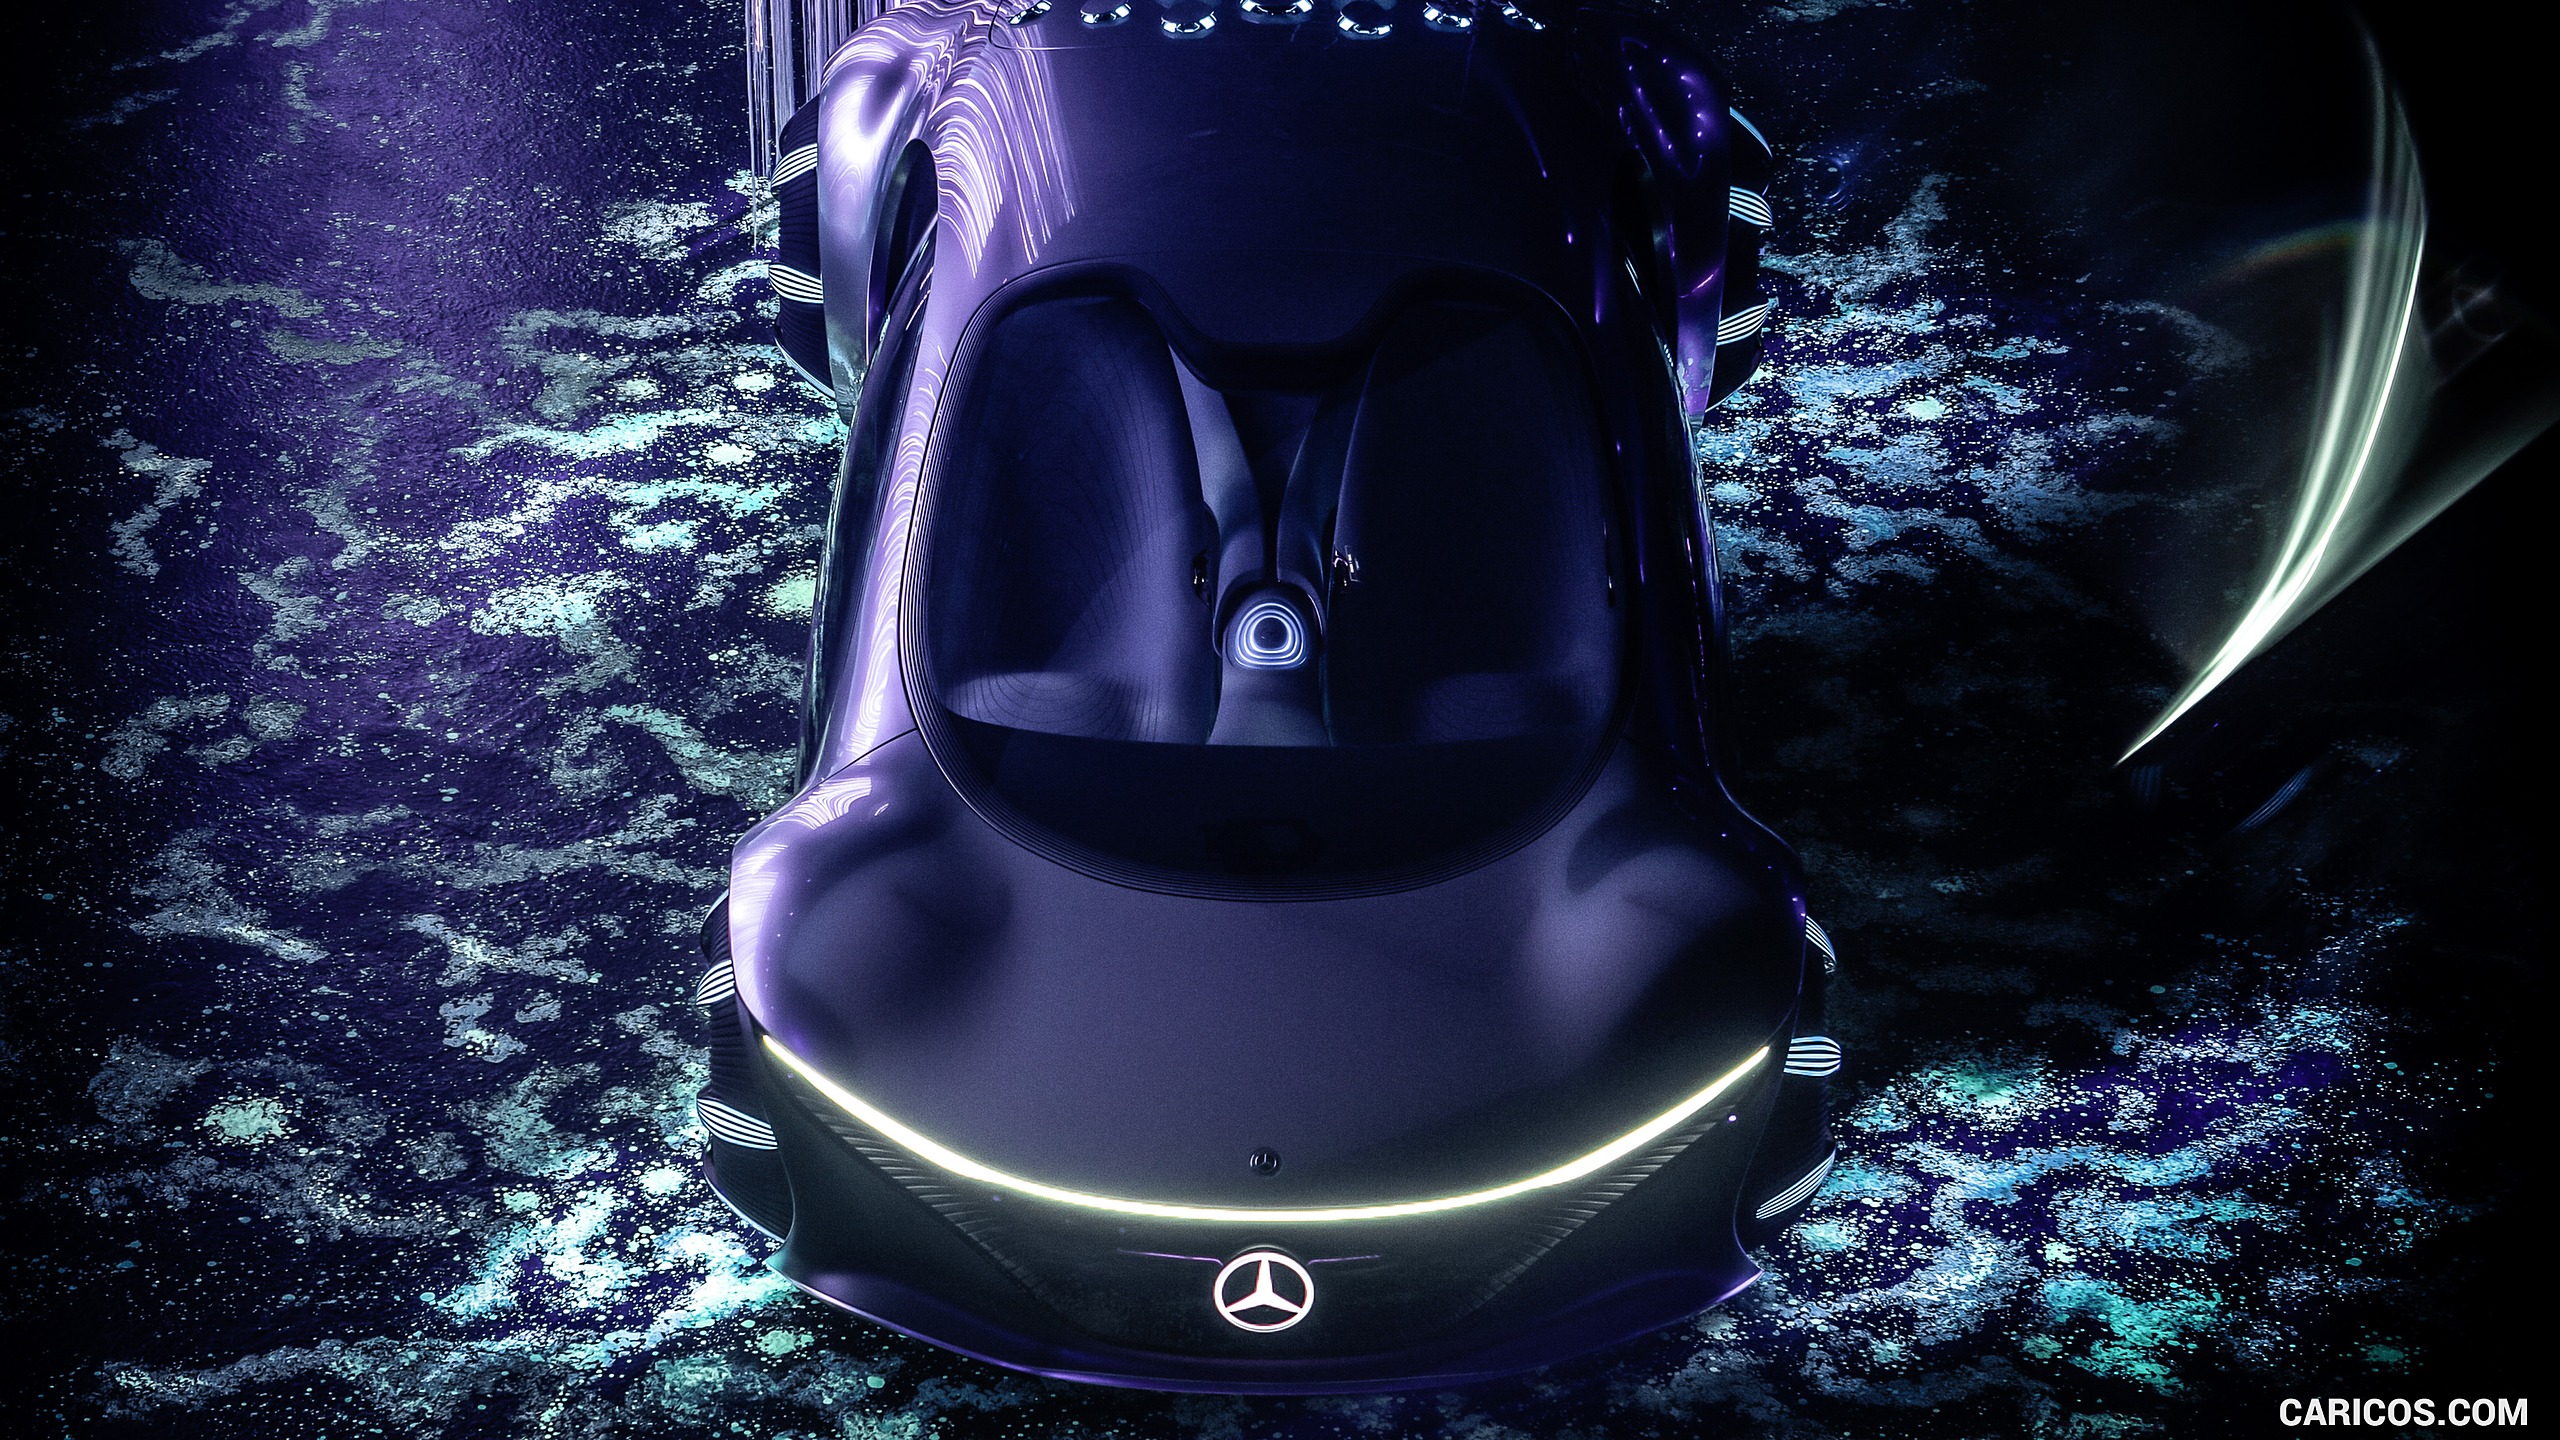 2020 Mercedes-Benz VISION AVTR Concept - Top, #15 of 60